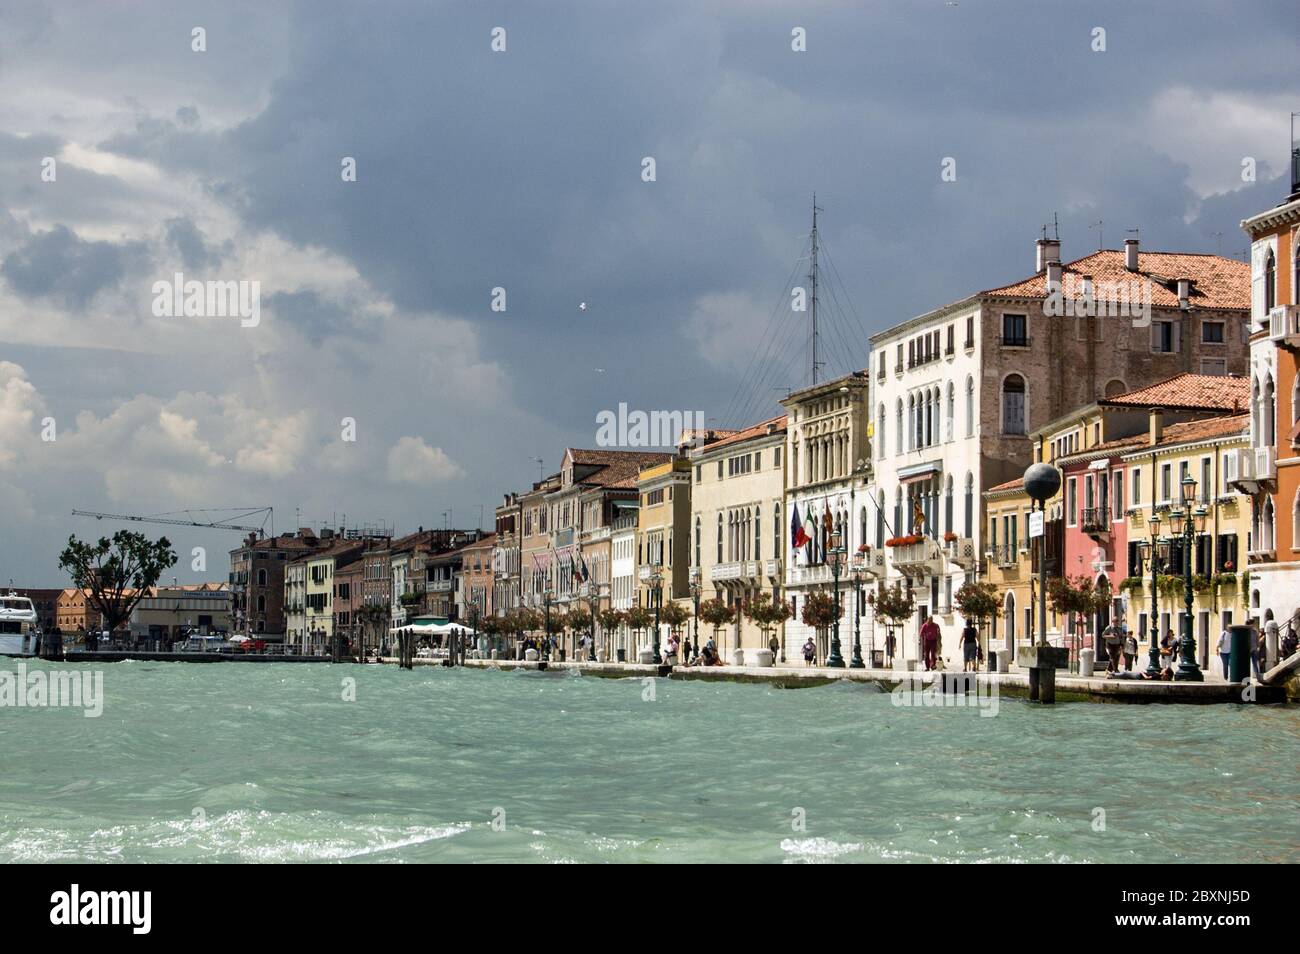 Venise, Italie - 9 juin 2011 : vue sur le quai connu sous le nom de Zattere, Venise. En bordure du canal Giudecca avec des nuages de tempête au loin. Banque D'Images